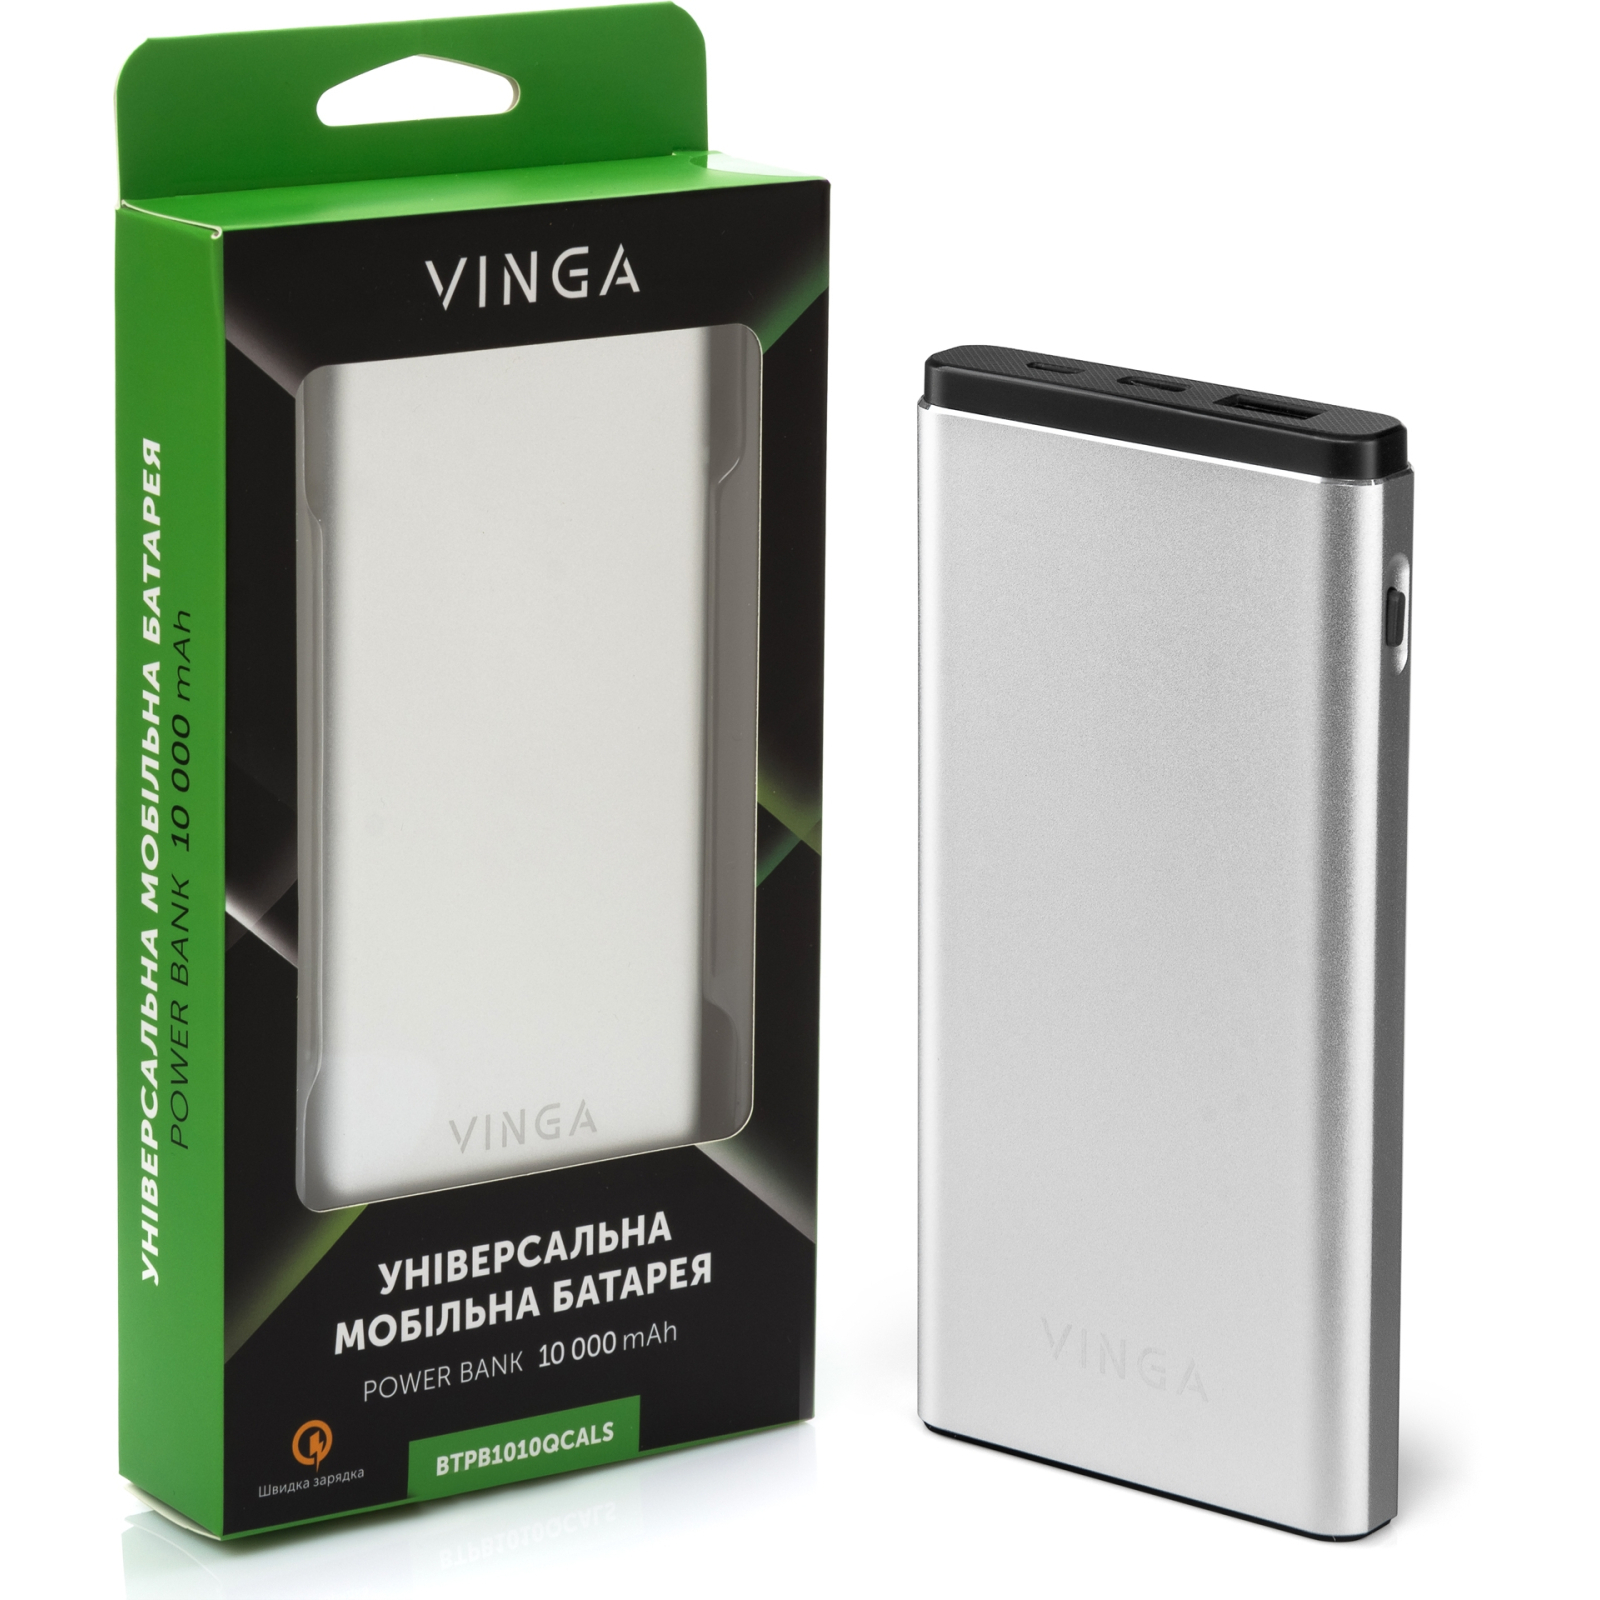 Батарея универсальная Vinga 10000 mAh QC3.0 PD aluminium silver (BTPB1010QCALS) изображение 5